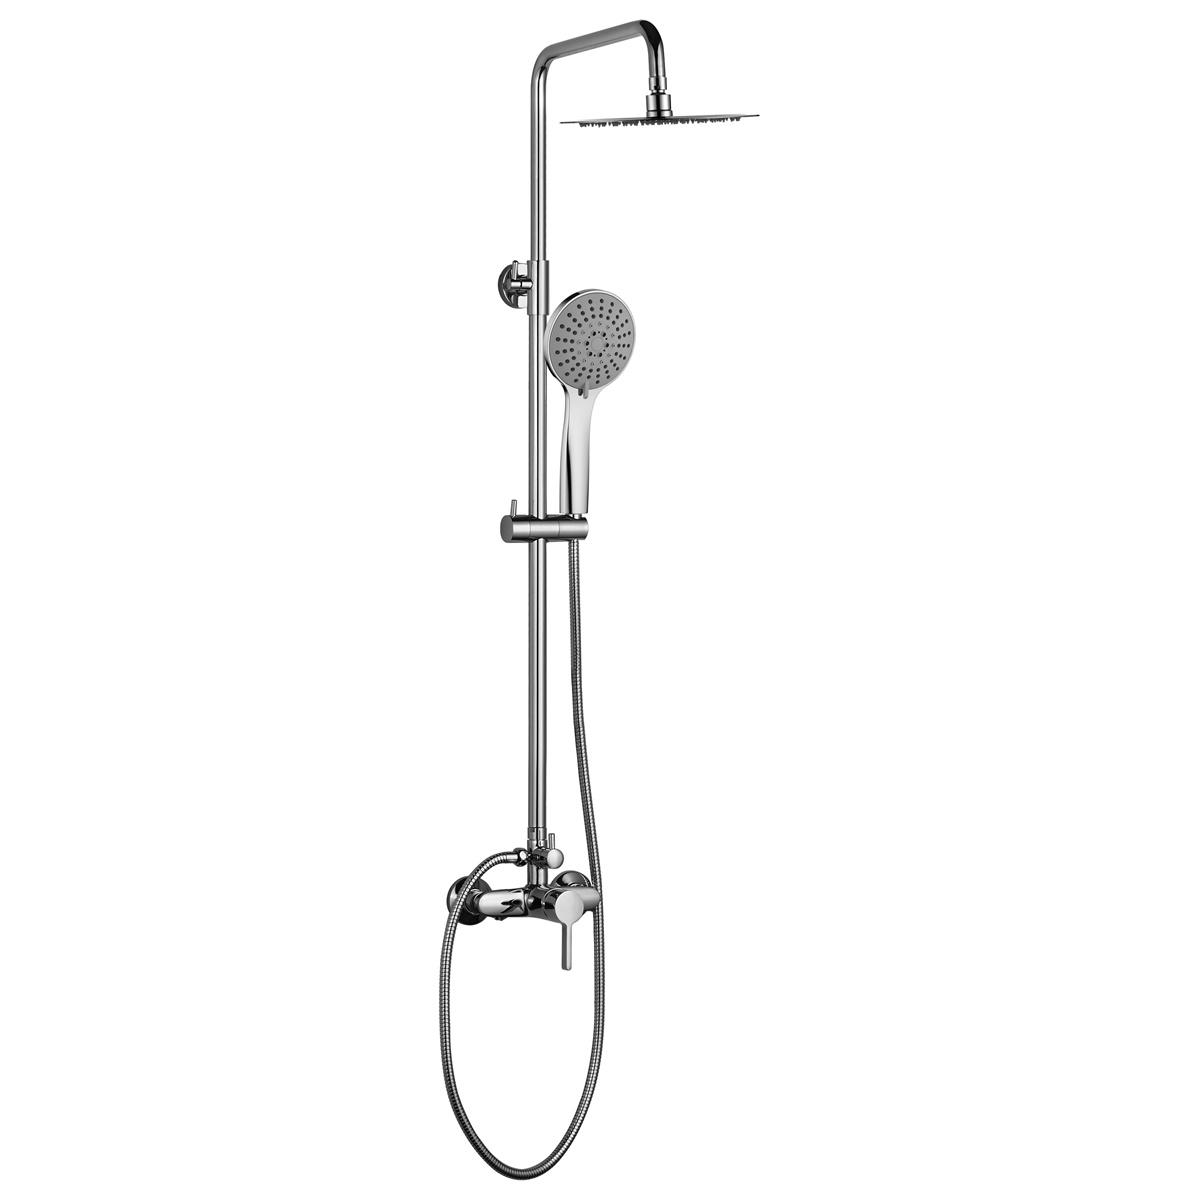 YS34104C Cột sen tắm, cột tắm mưa có vòi, có thể điều chỉnh độ cao;